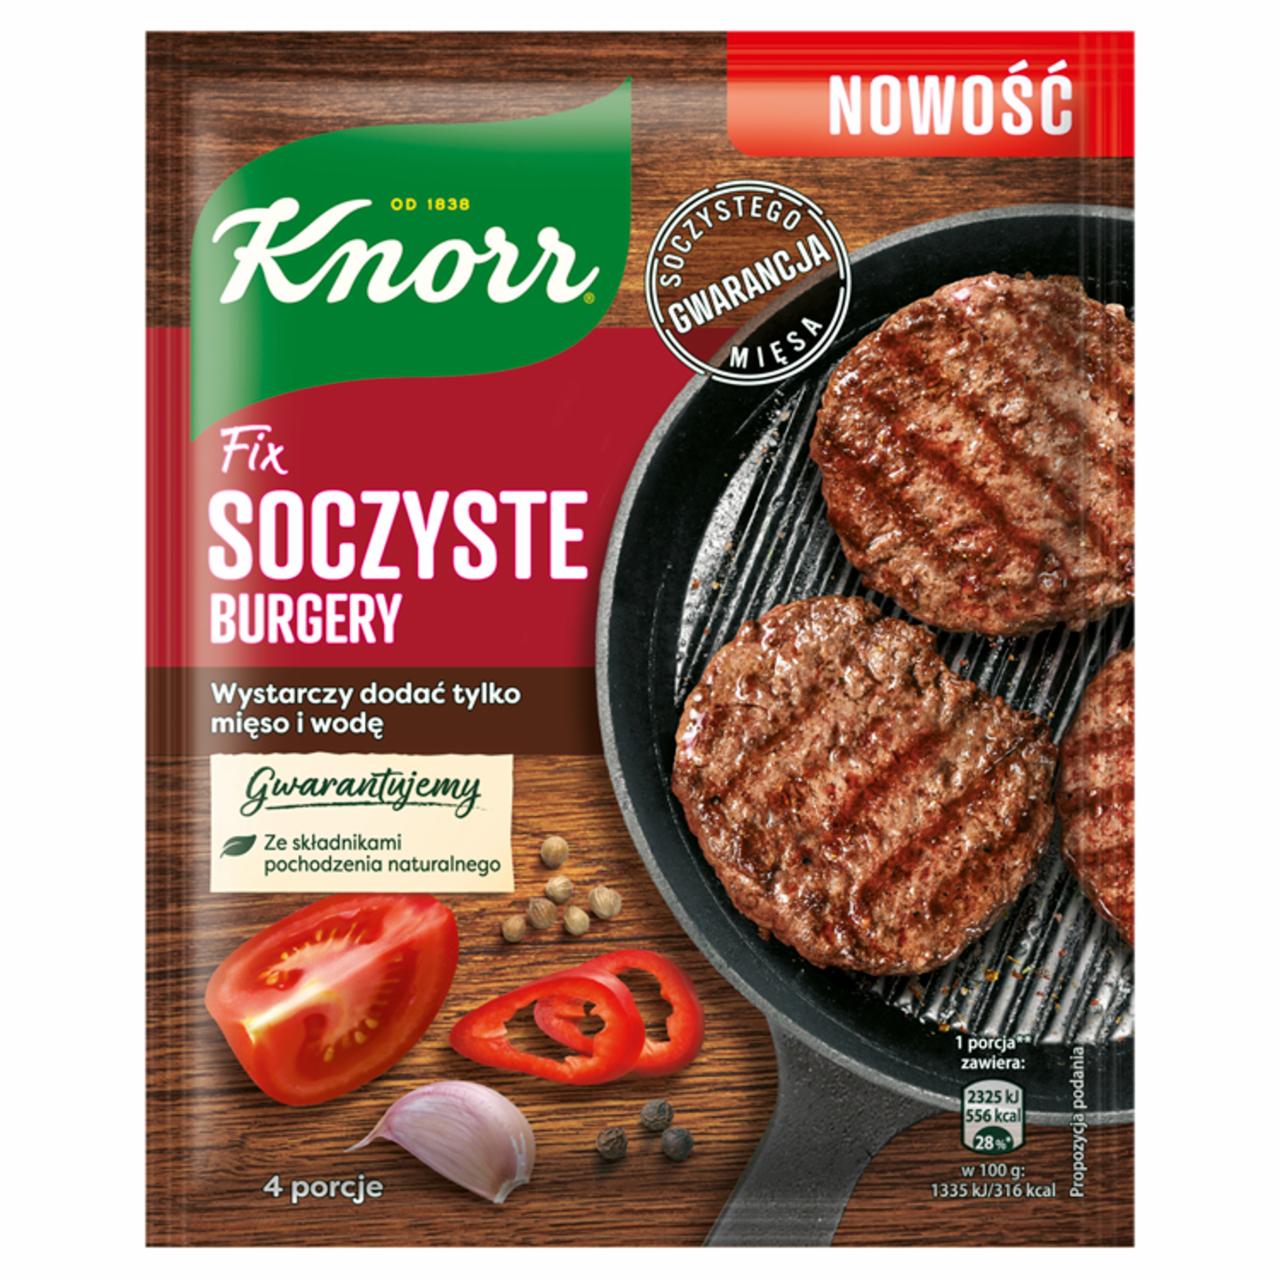 Zdjęcia - Knorr Fix soczyste burgery 70 g